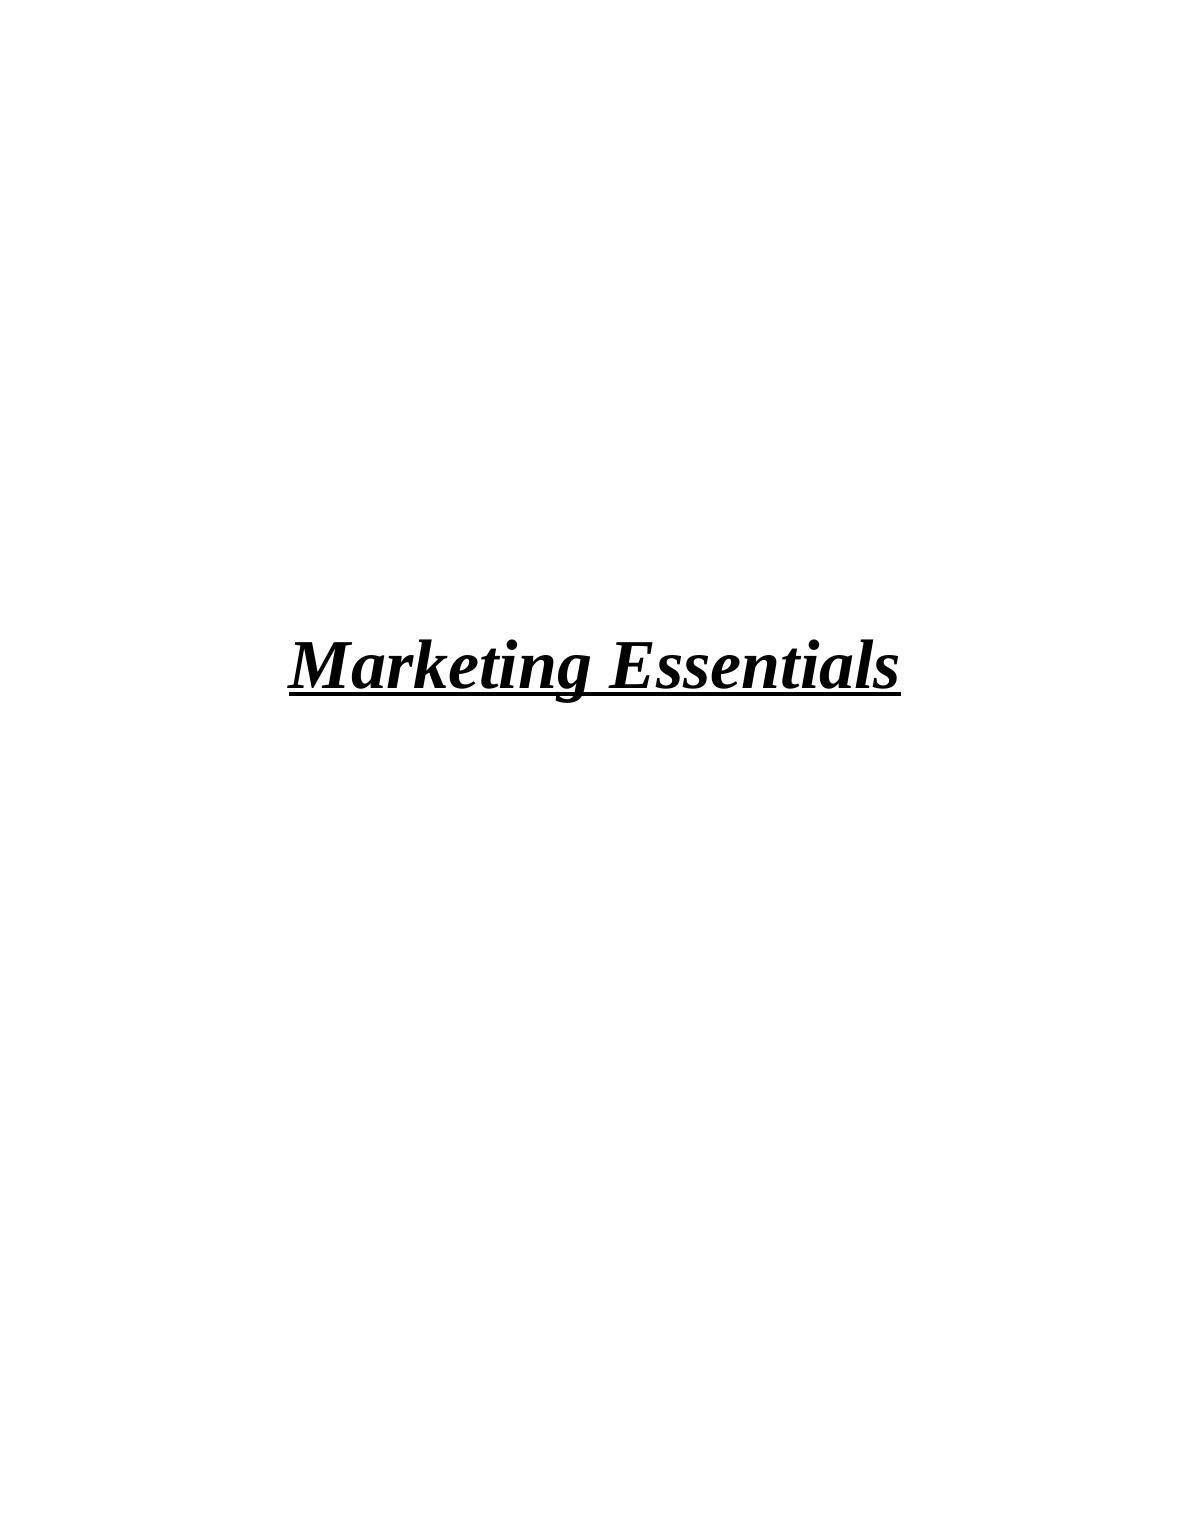 Marketing Essentials Assignment Sample - Cadbury Company_1